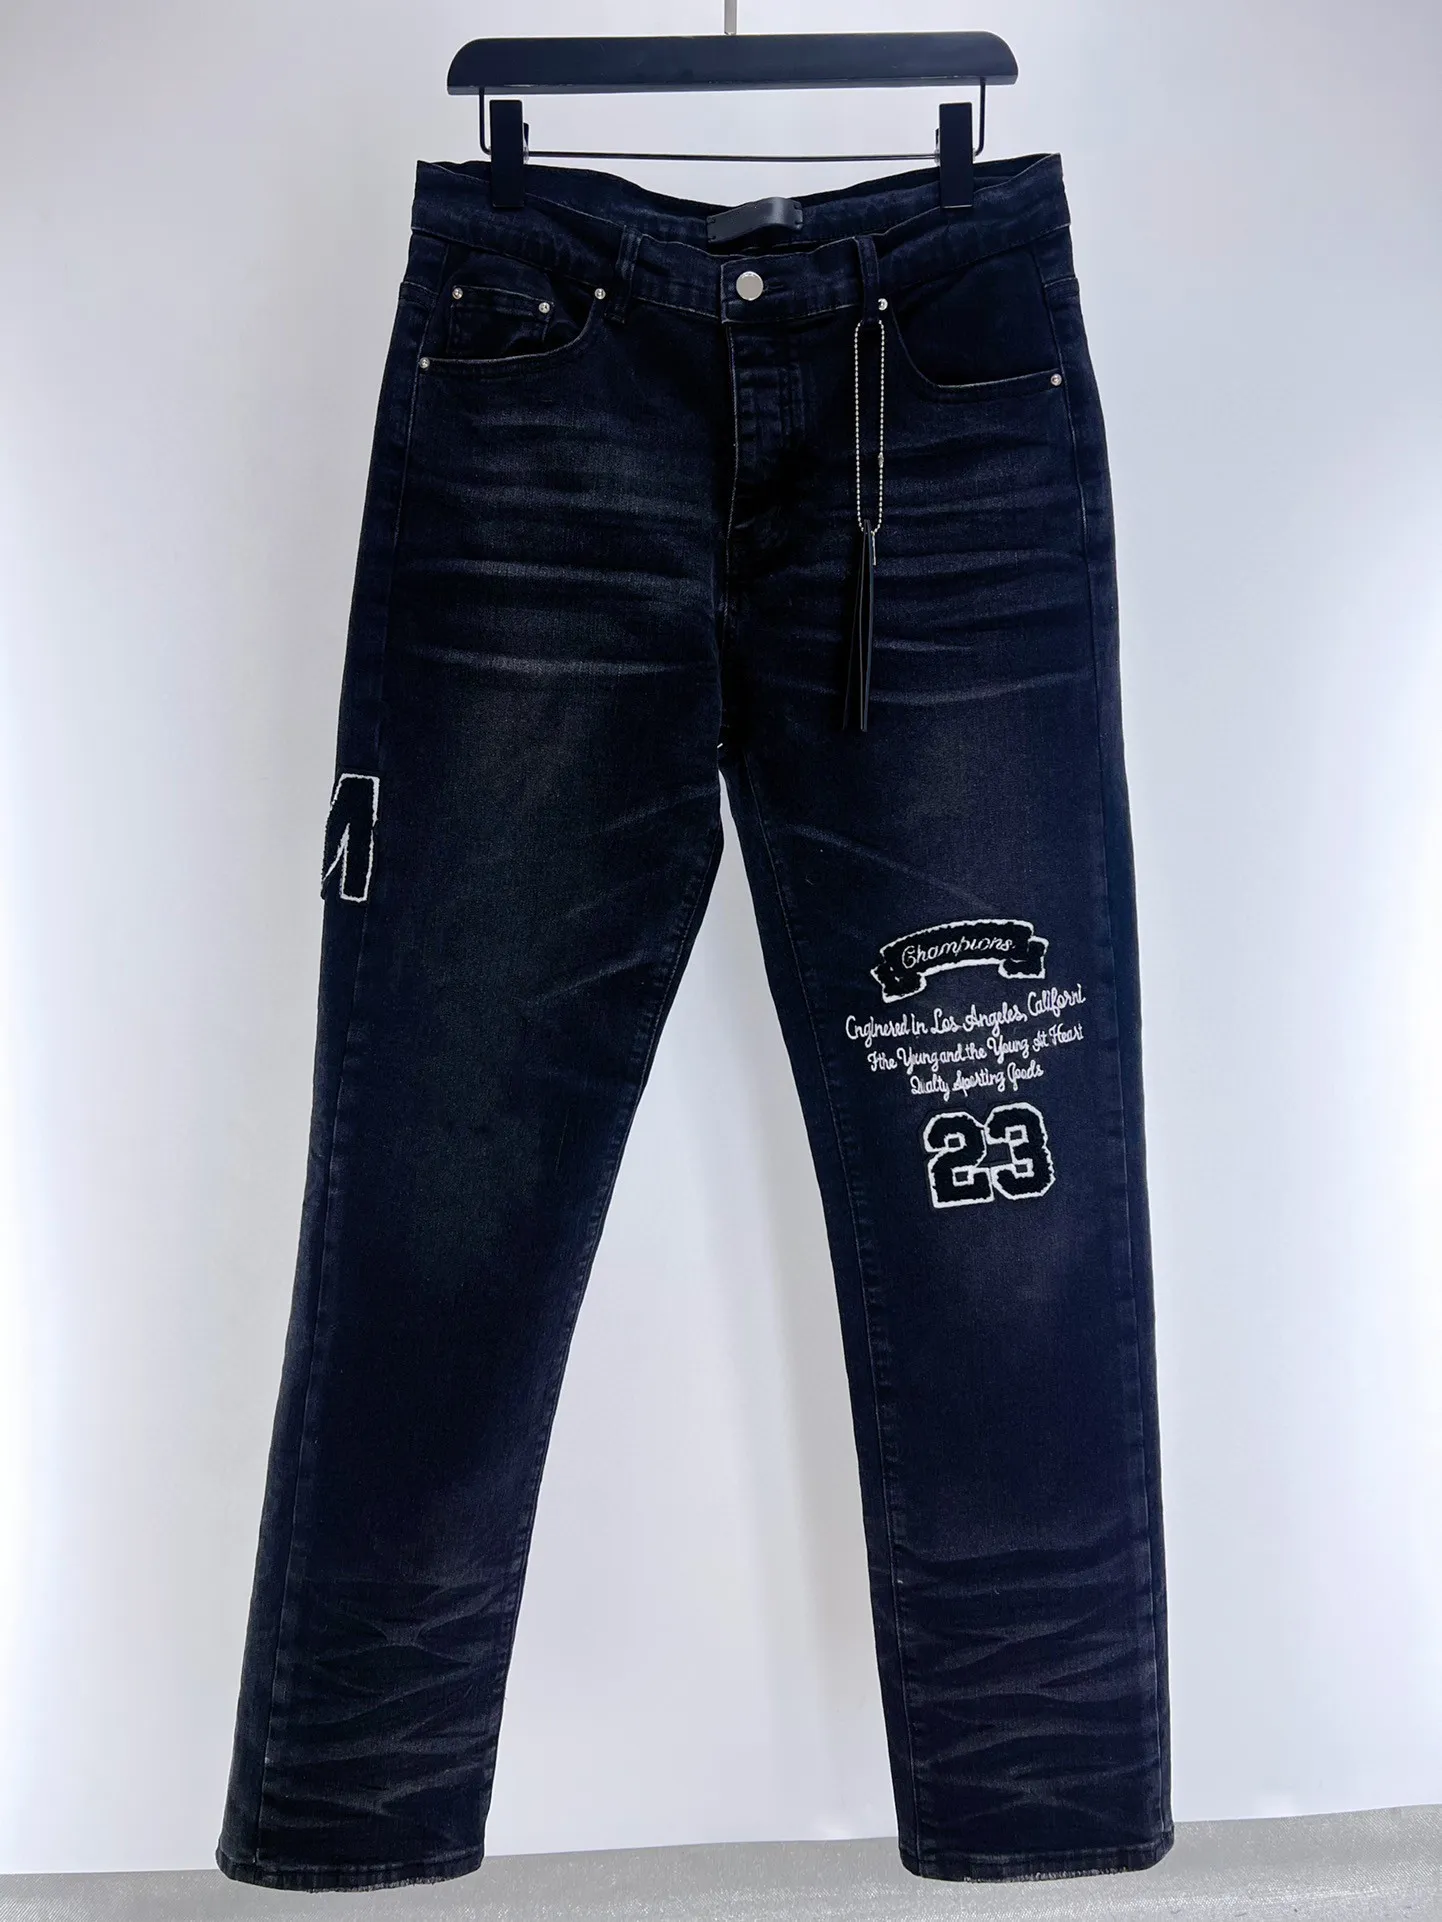 Мужские дизайнерские джинсы Повседневные мужские джинсы JEAN Узкие брюки Уничтожить отверстие для лоскутного одеяла Прямое колено Брюки с надписью AM Ретро Брюки в стиле хип-хоп Street Pant